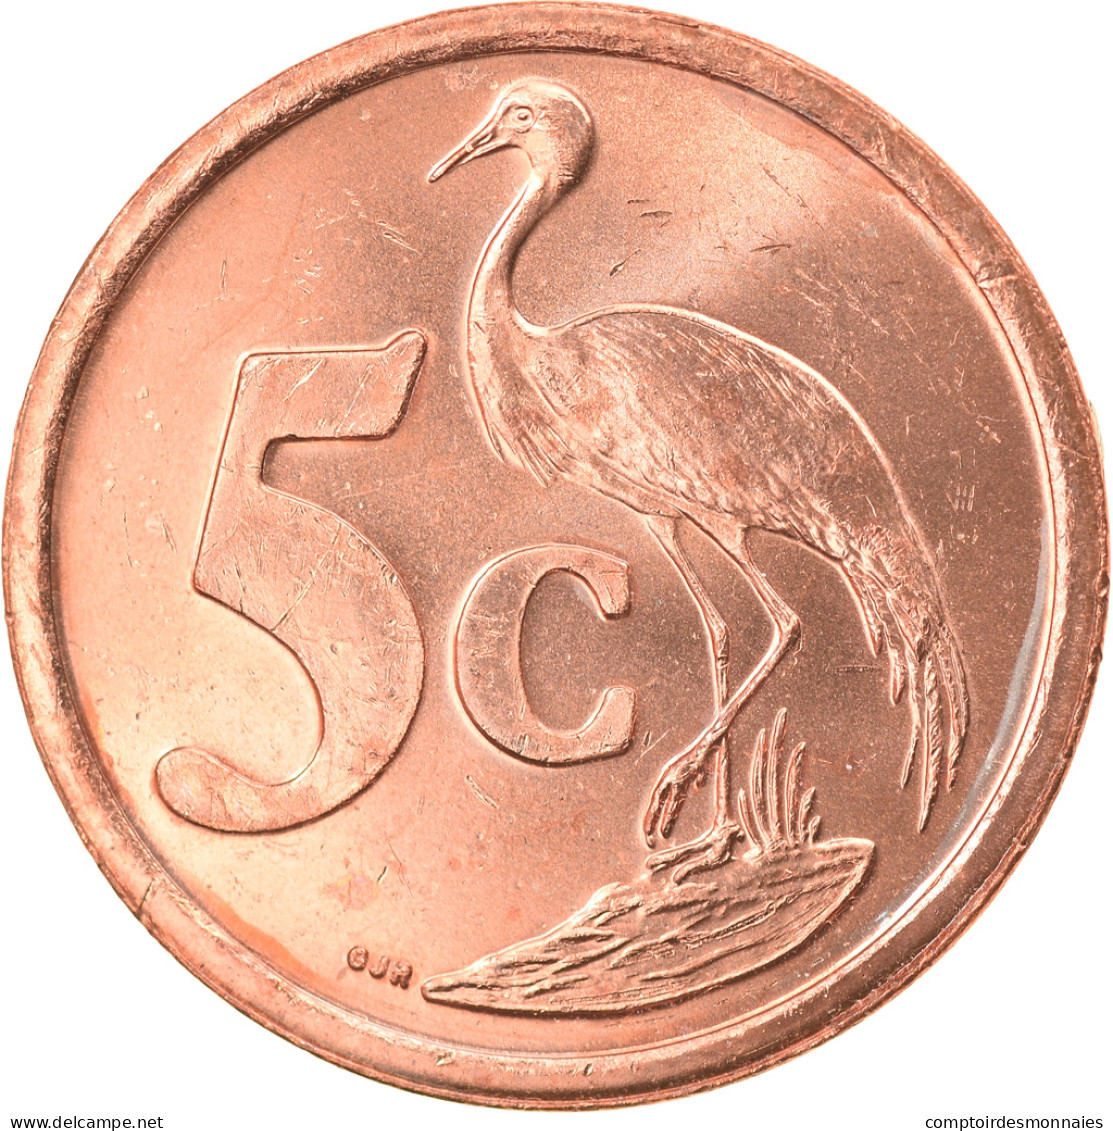 Monnaie, Afrique Du Sud, 5 Cents, 2004, TTB+, Copper Plated Steel, KM:325 - Südafrika